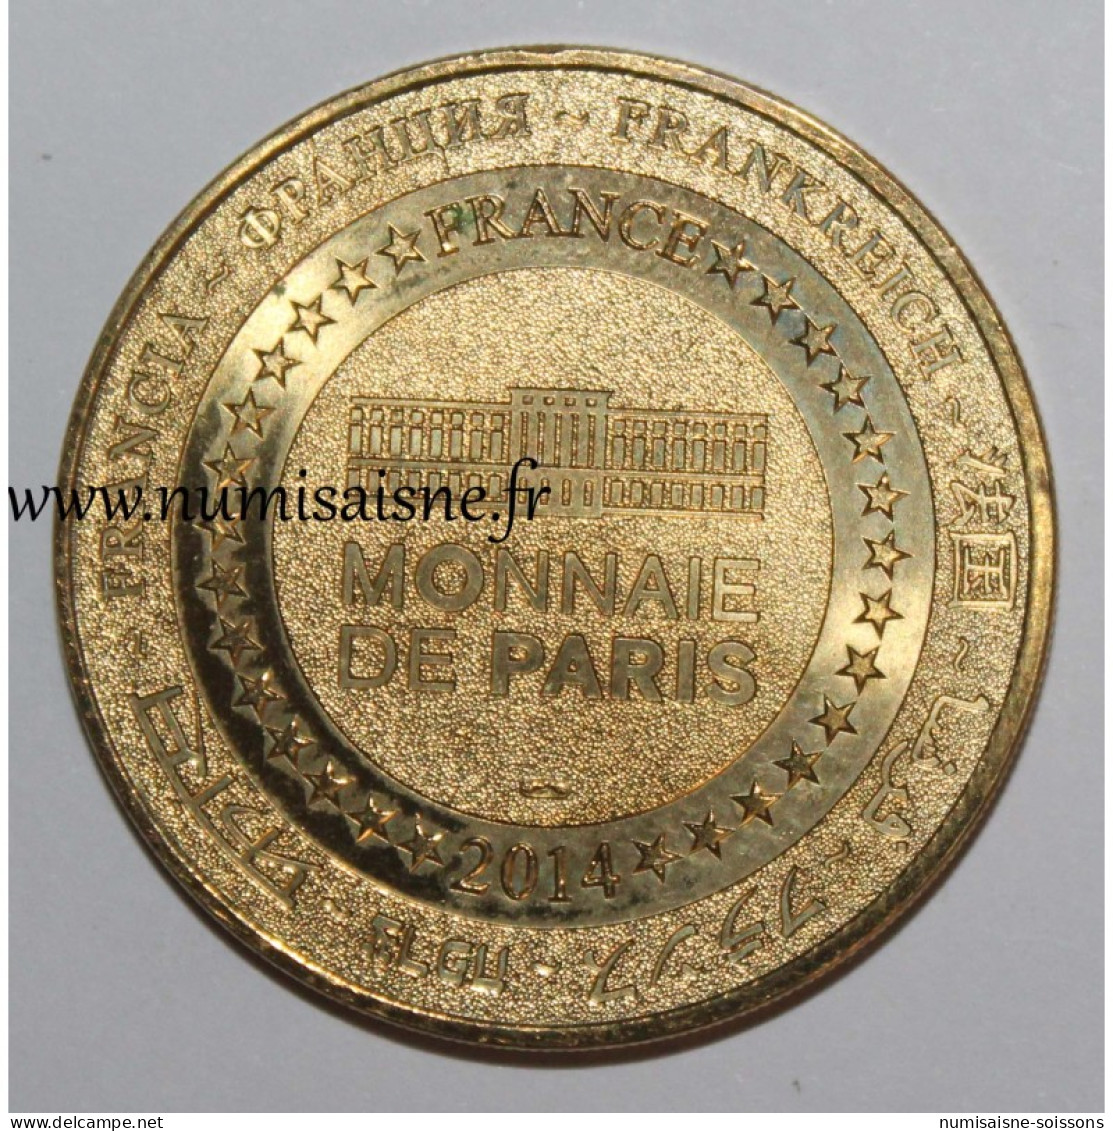 75 - PARIS - ÉGLISE SAINT GERMAIN DES PRÉS - Monnaie De Paris - 2014 - 2014